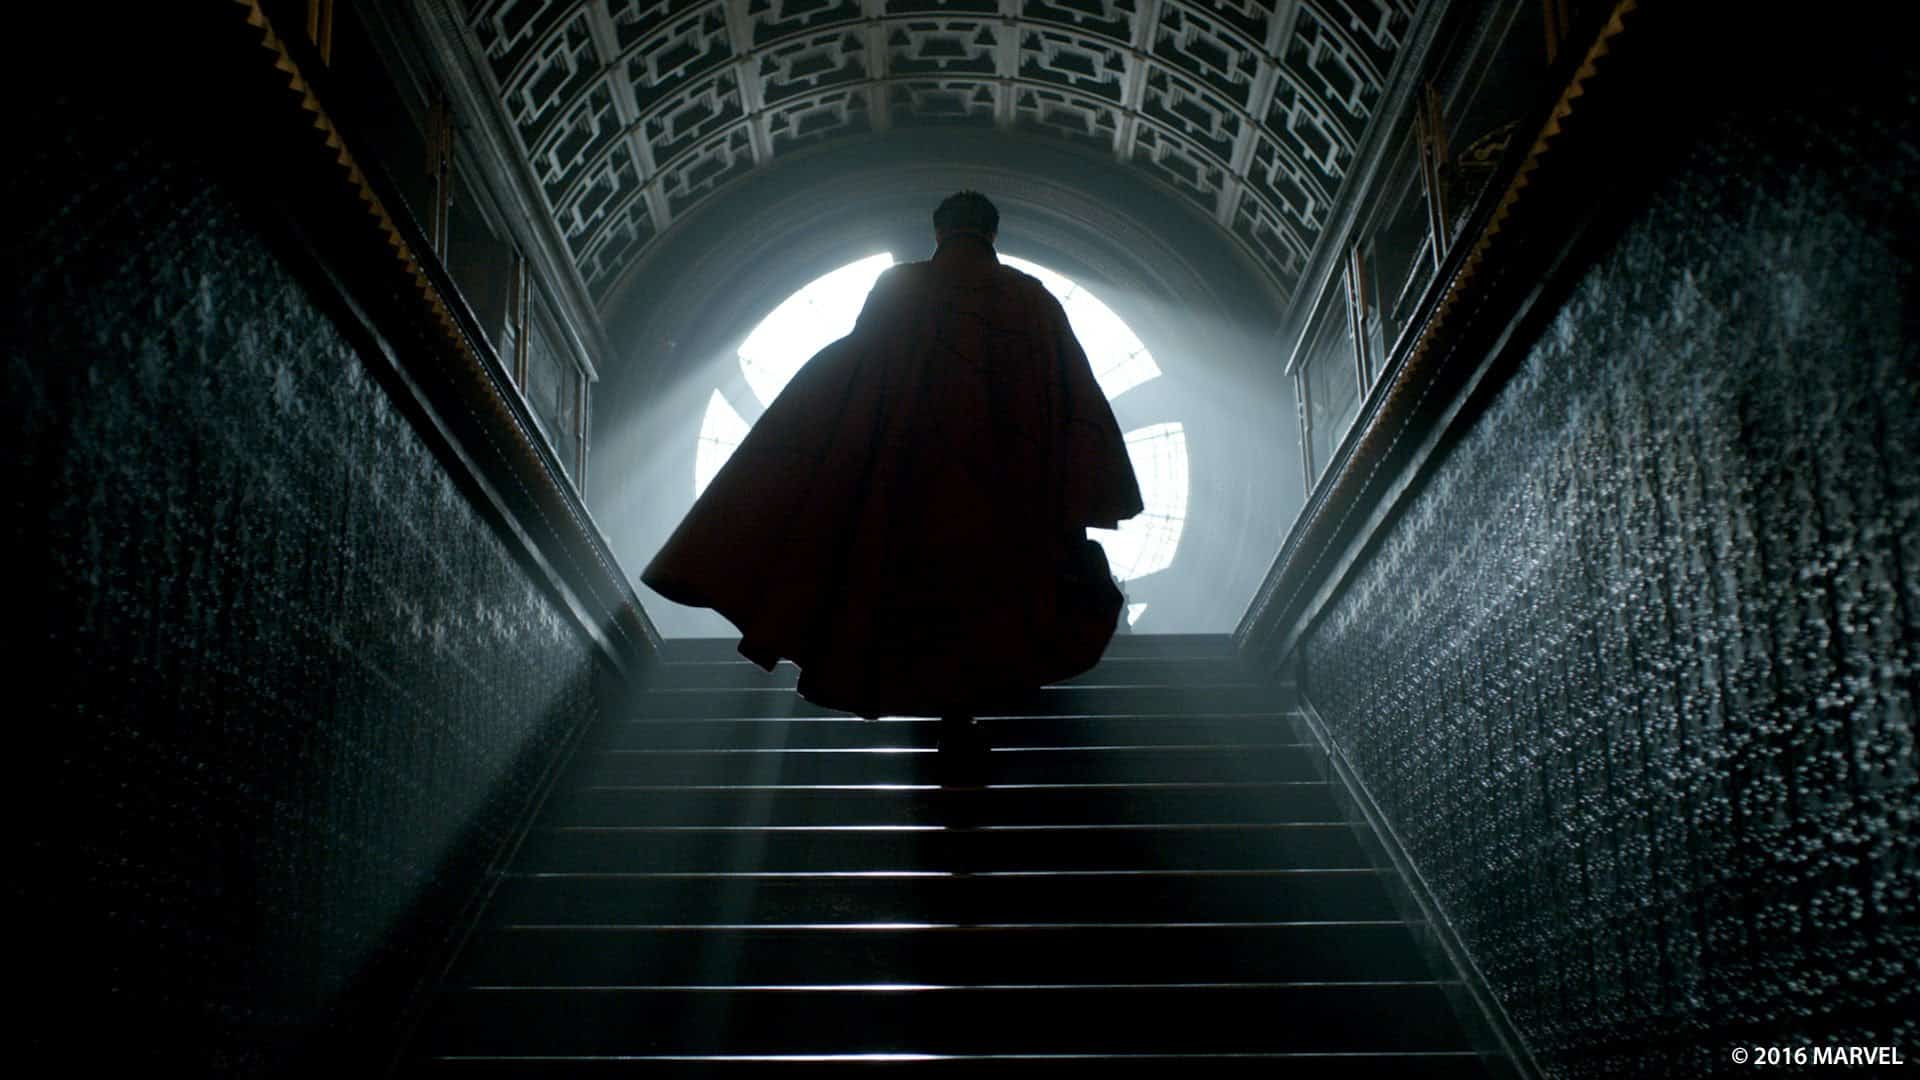 Doctor Strange - Trailer